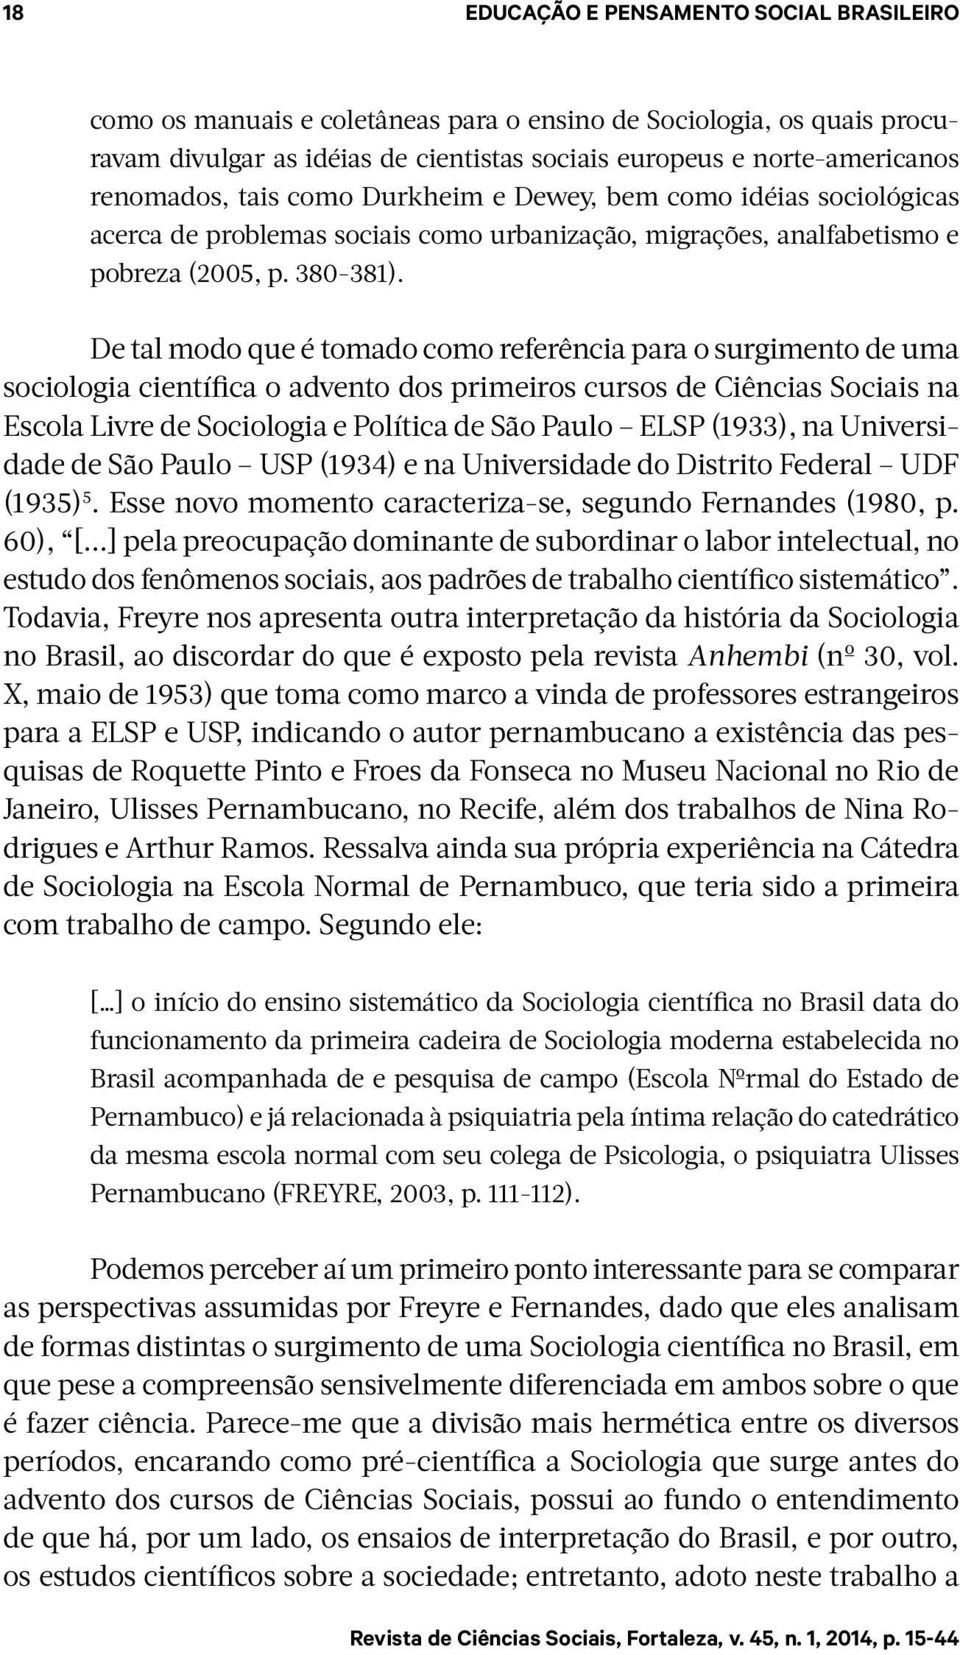 De tal modo que é tomado como referência para o surgimento de uma sociologia científica o advento dos primeiros cursos de Ciências Sociais na Escola Livre de Sociologia e Política de São Paulo ELSP